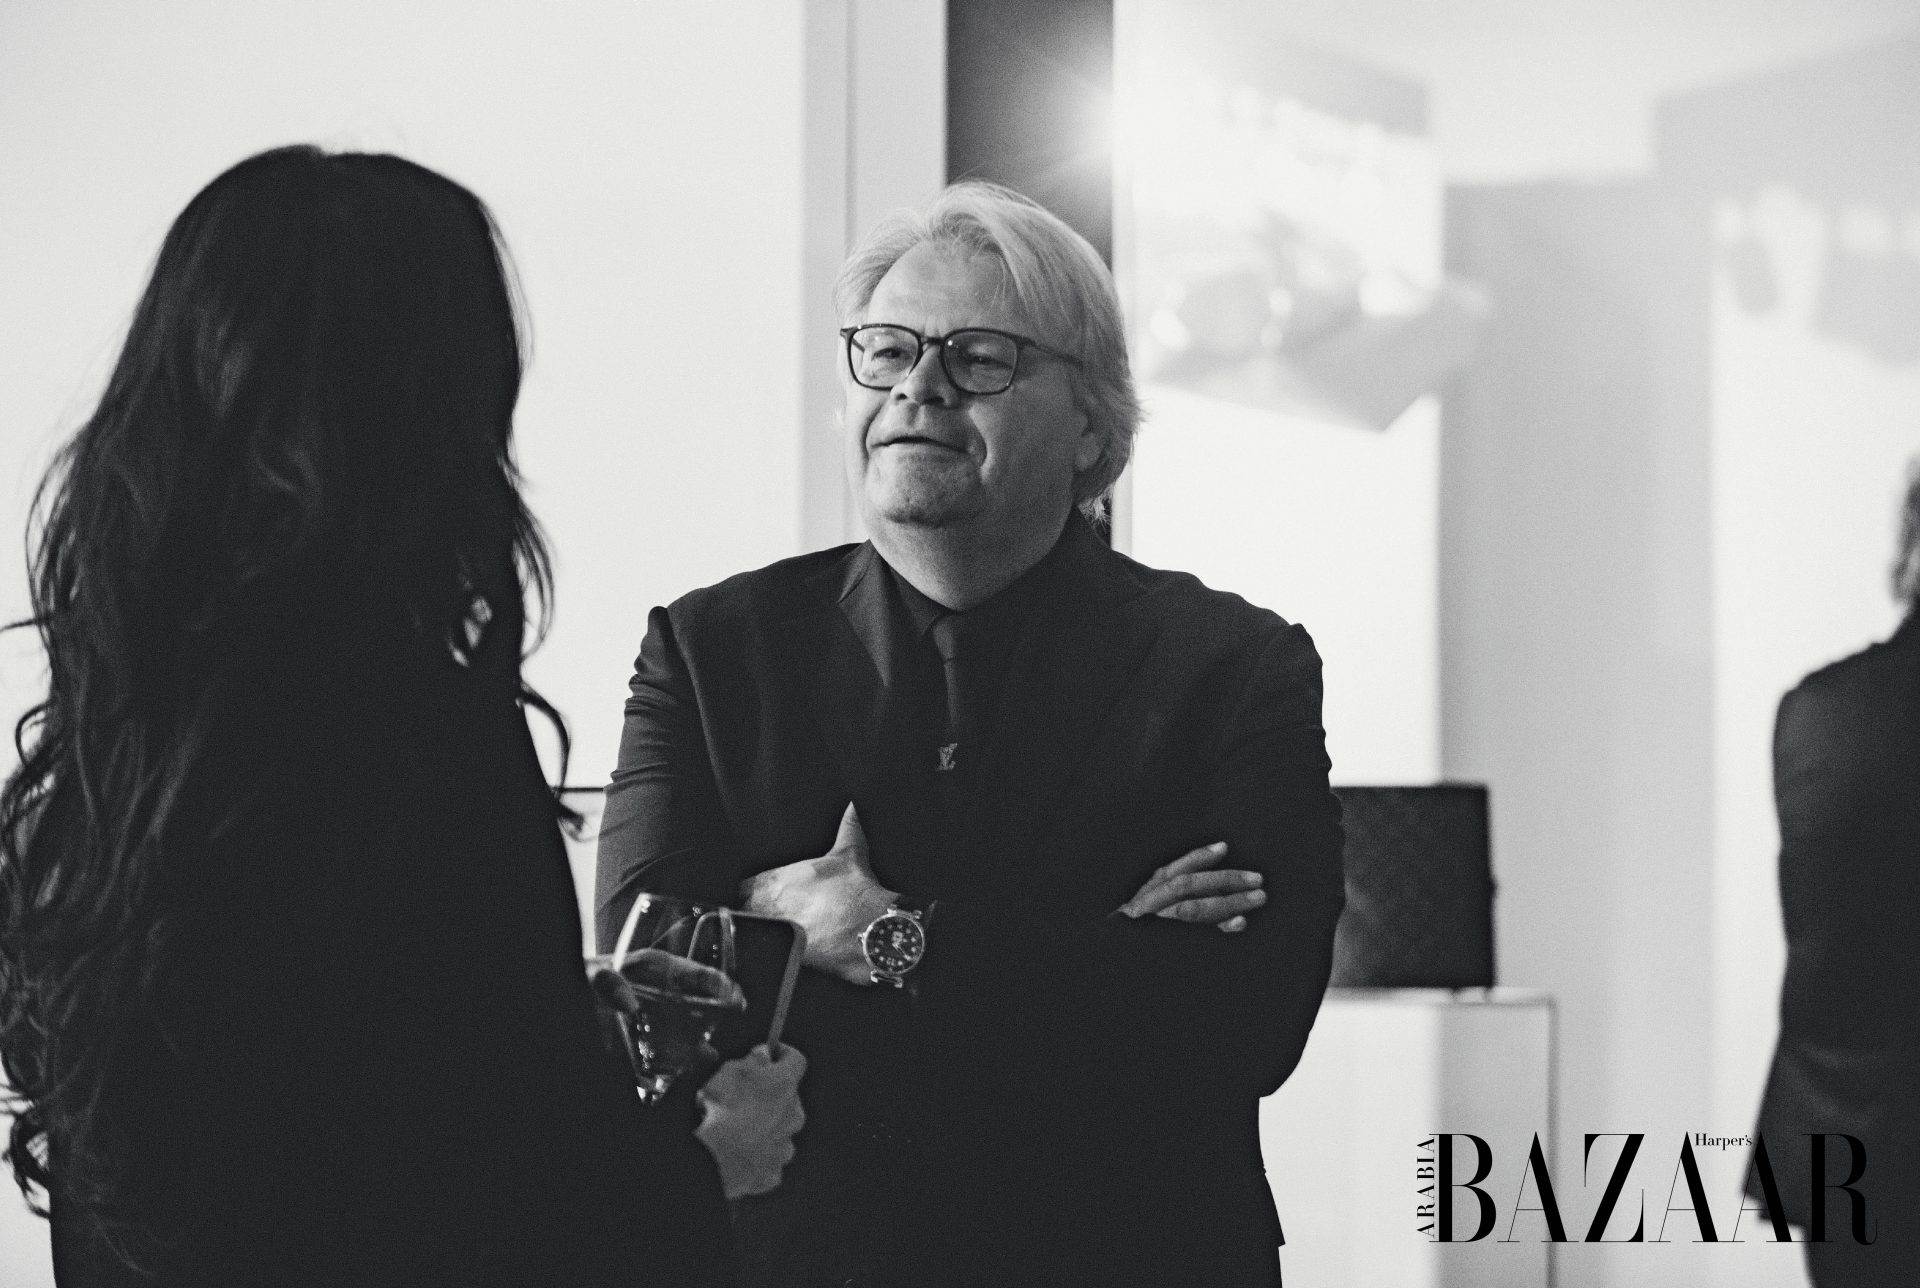 Diala Makki Takes Bazaar Arabia To Discover Louis Vuitton's New